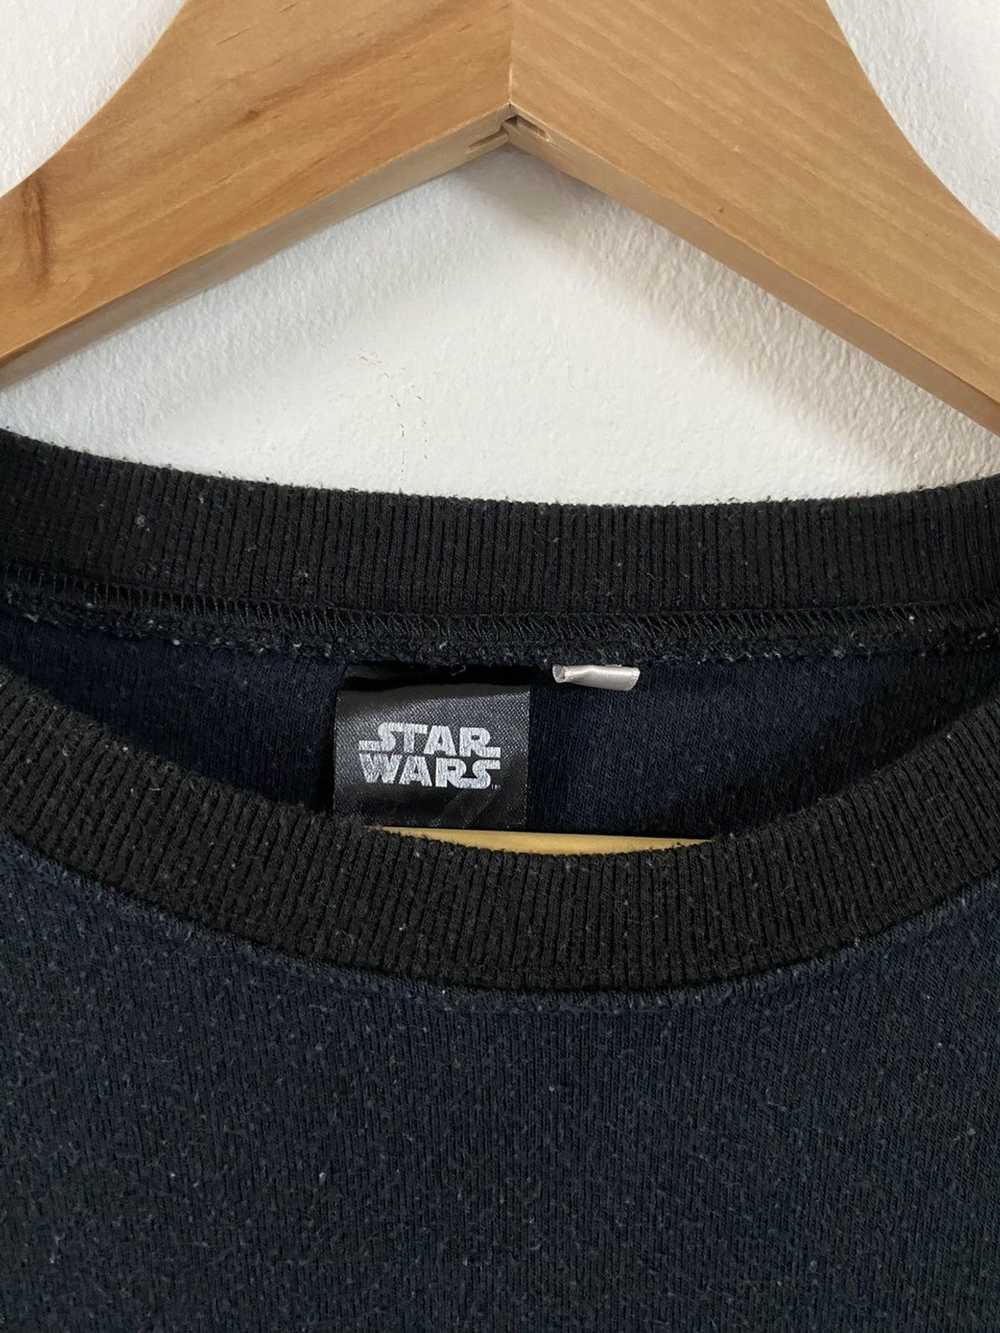 Movie × Star Wars StarWars Yoda Long Sleeve T-Shi… - image 7